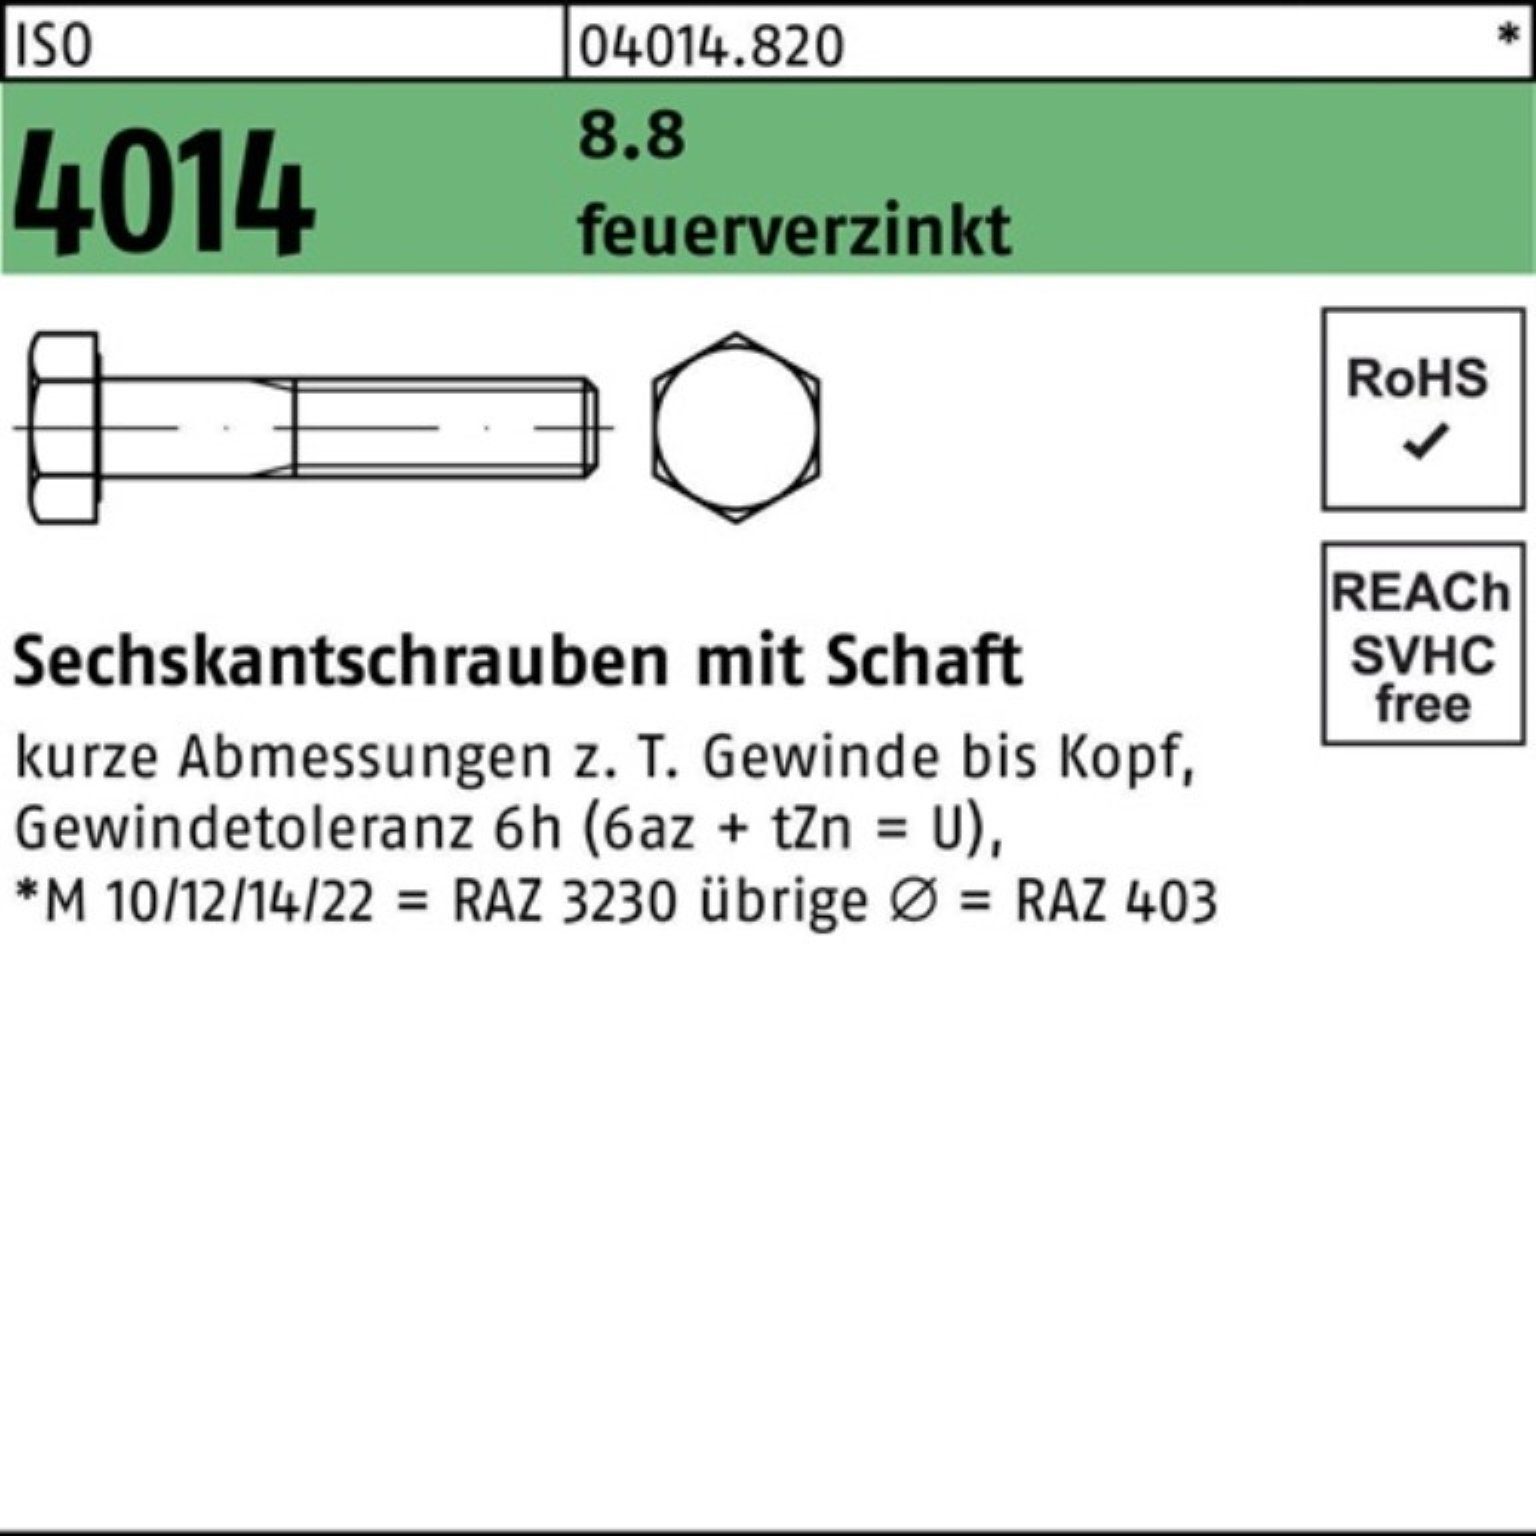 1 Bufab Sechskantschraube Schaft 140 ISO Pack 100er feuerverz. M36x 8.8 4014 Sechskantschraube